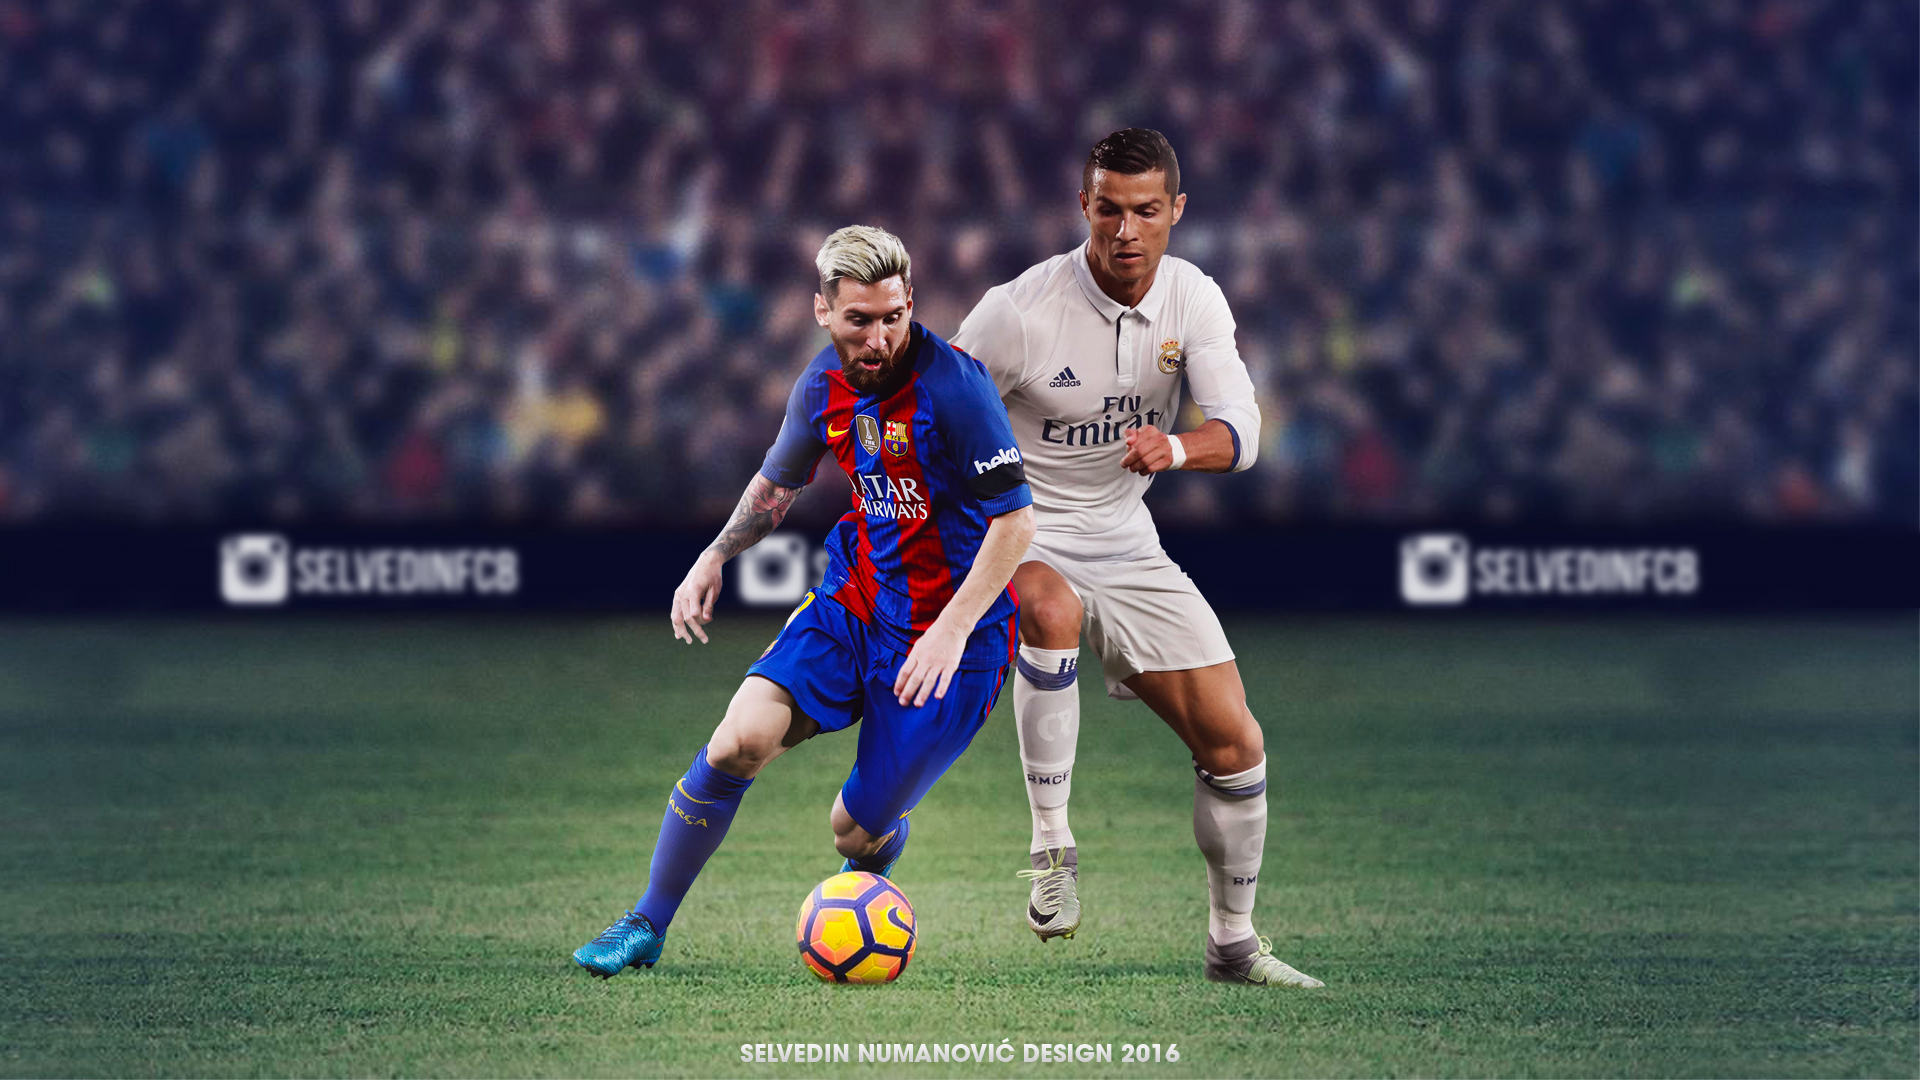 Tải về hoàn toàn miễn phí bộ ảnh Messi vs Ronaldo sôi động và nhiều cảm xúc để bạn có thể tận hưởng những khoảnh khắc đáng nhớ về hai ngôi sao bóng đá hàng đầu thế giới.